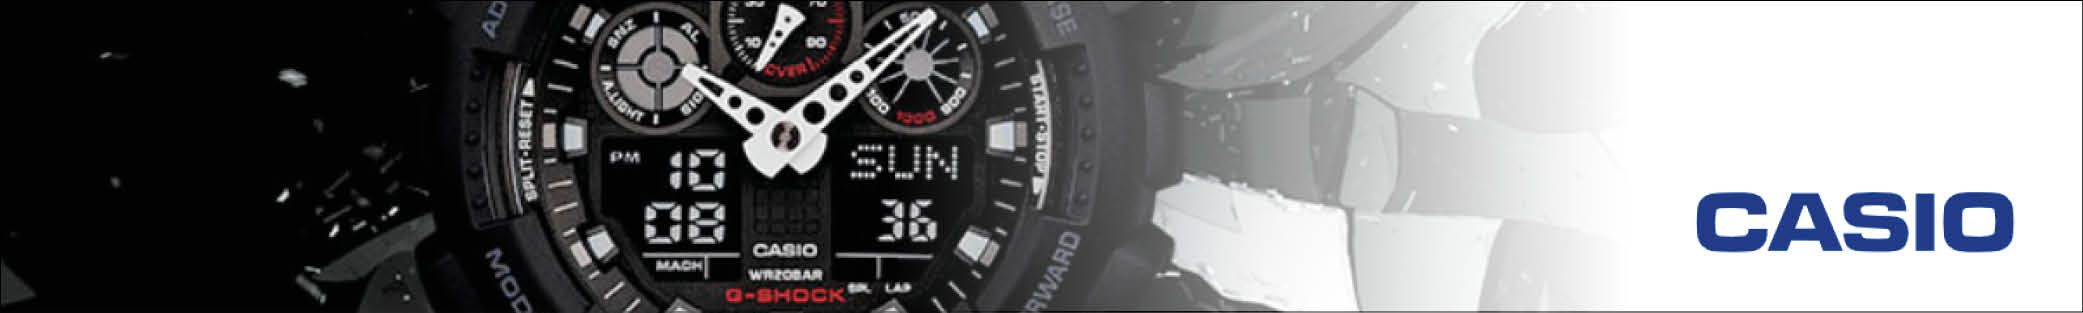 Casios design bliver hele tiden videreudviklet og deres ure er i højeste kvalitet